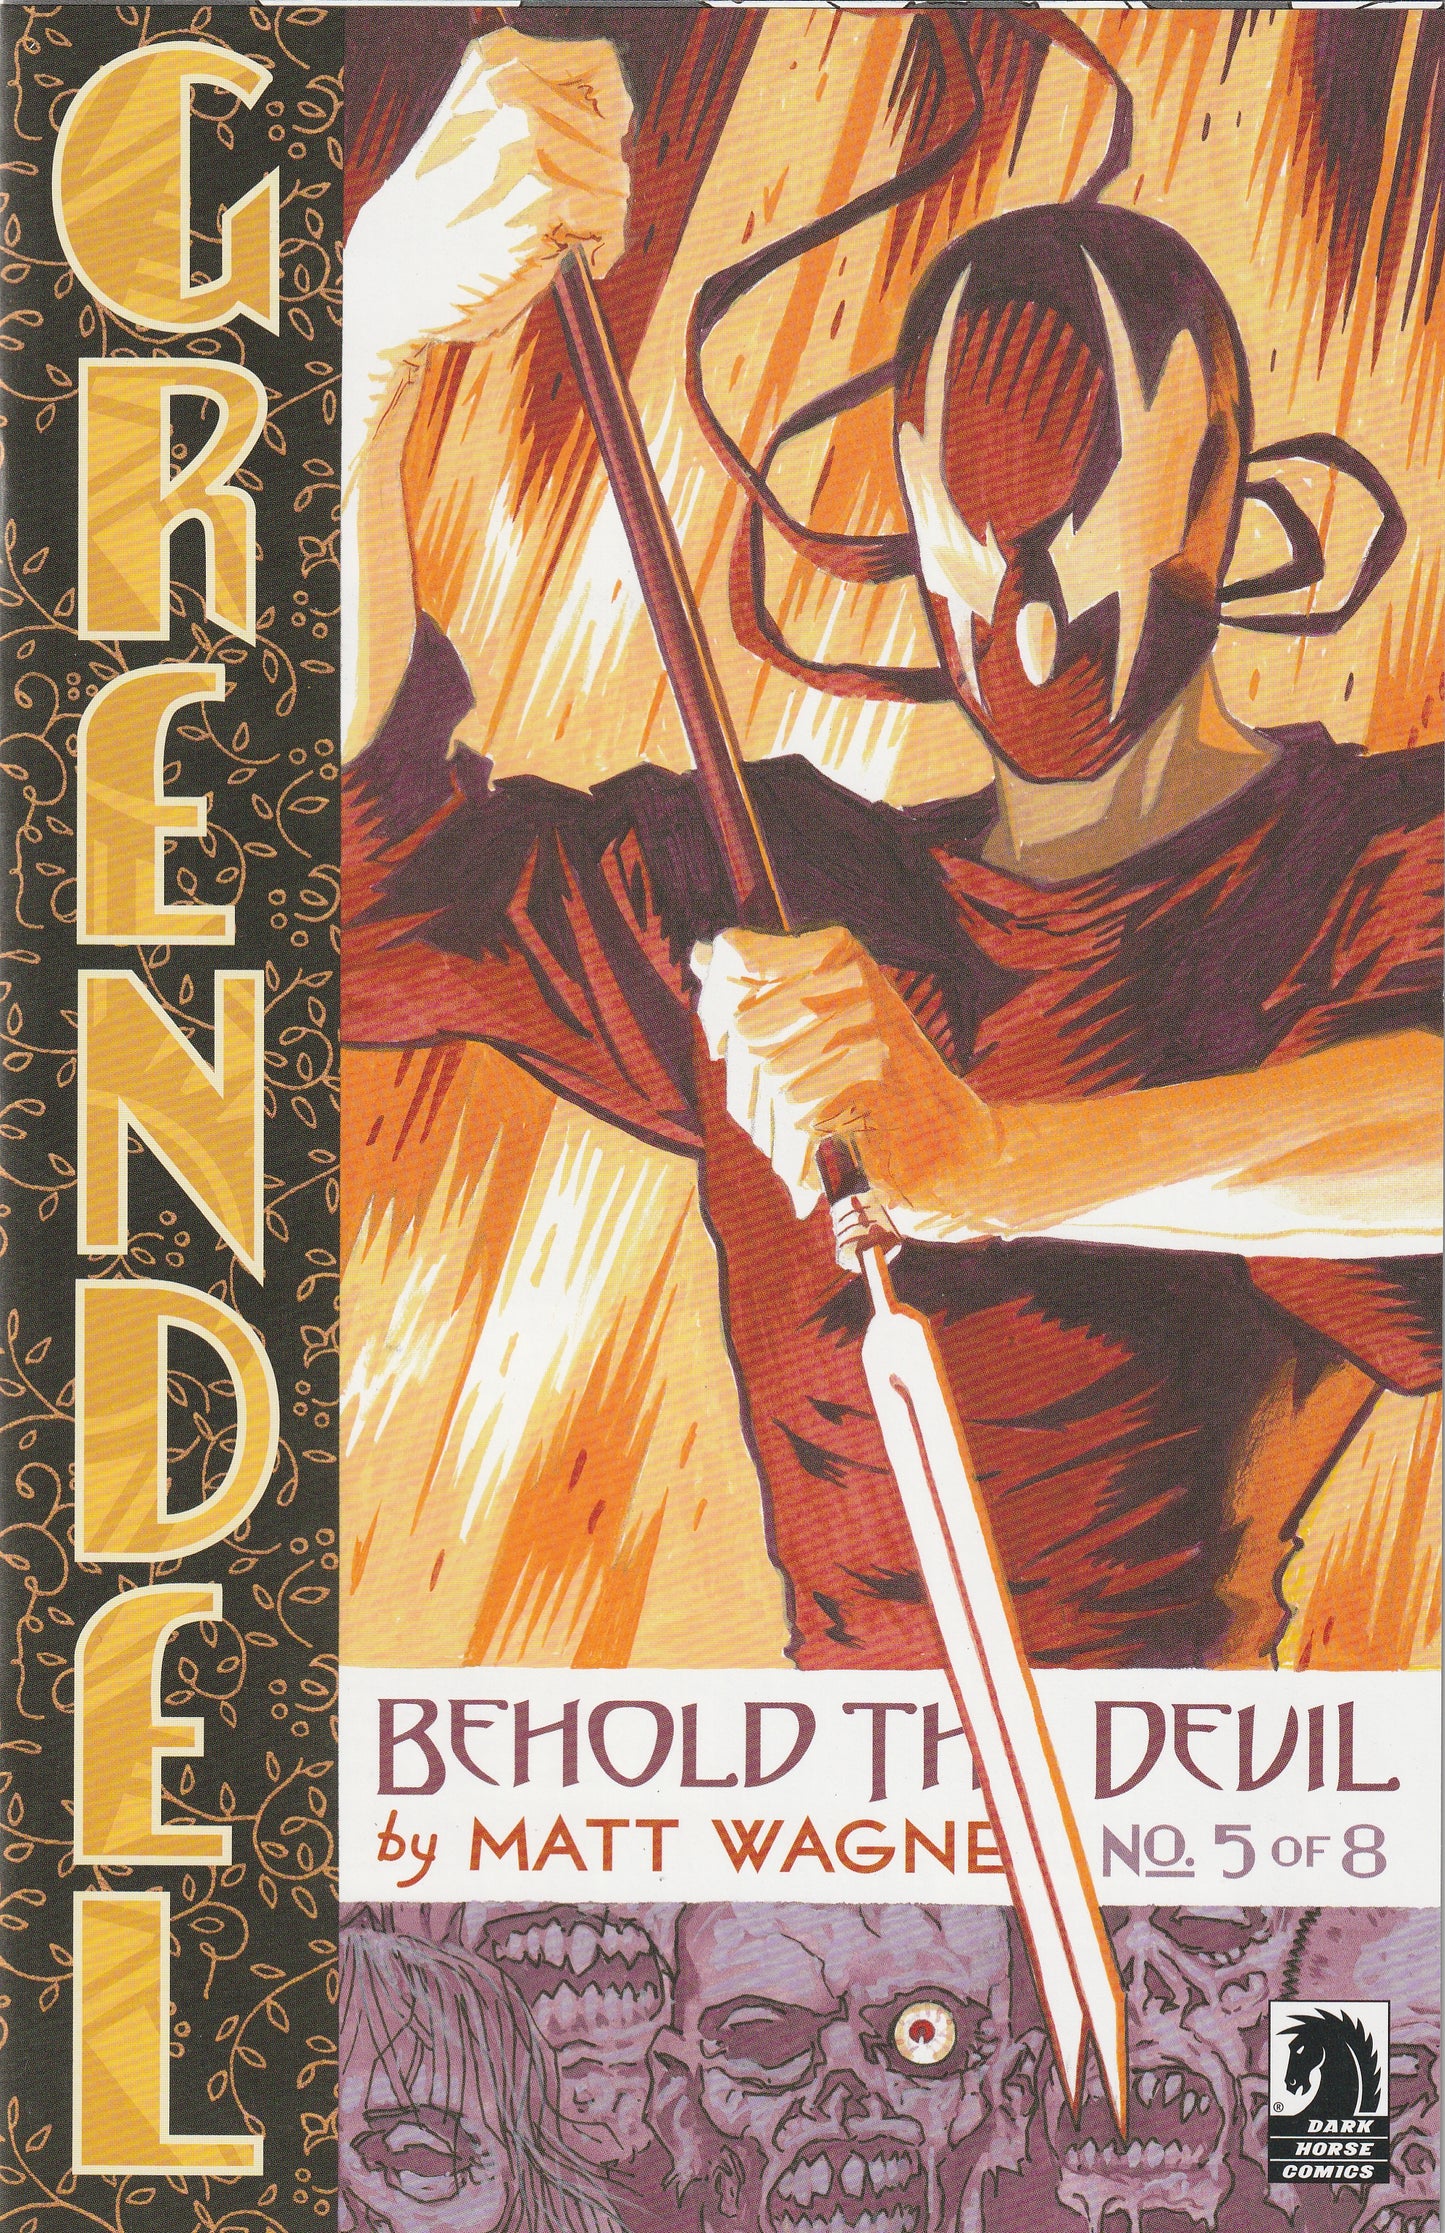 Grendel: Behold the Devil (2007-2008) - 8 issue mini series - Matt Wagner